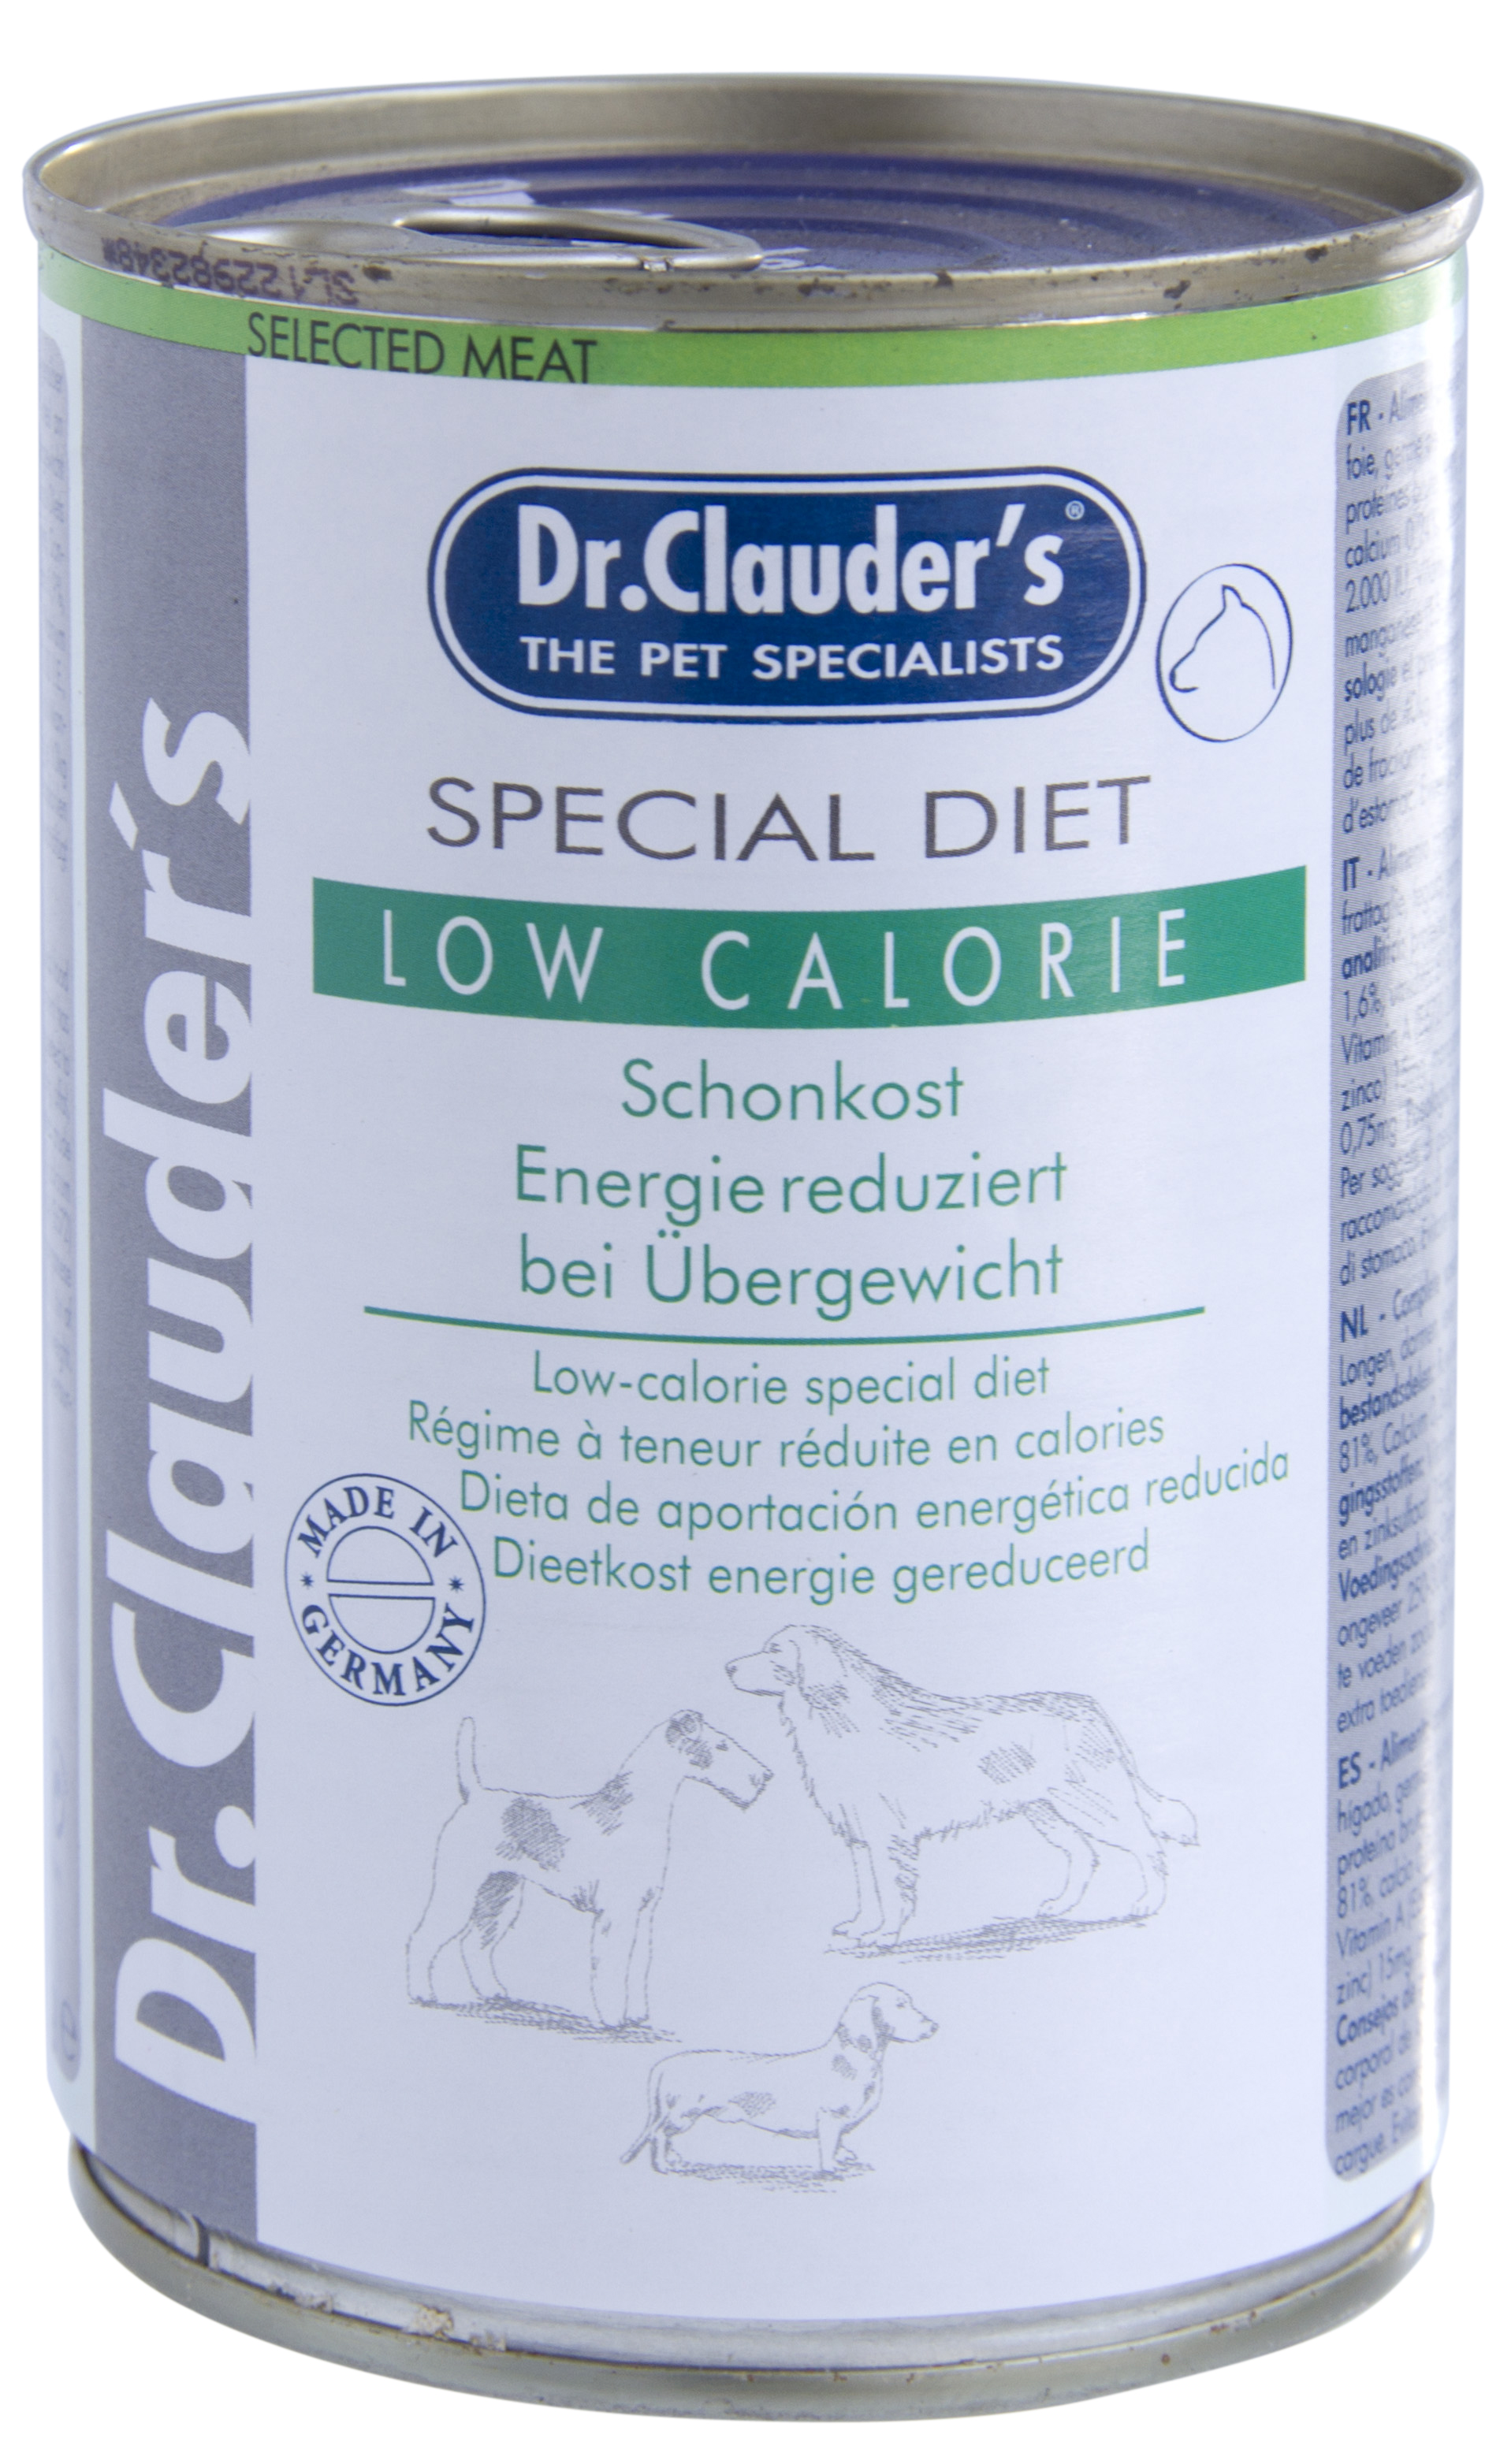 Dr.Clauder's Special Diet Low Calorie